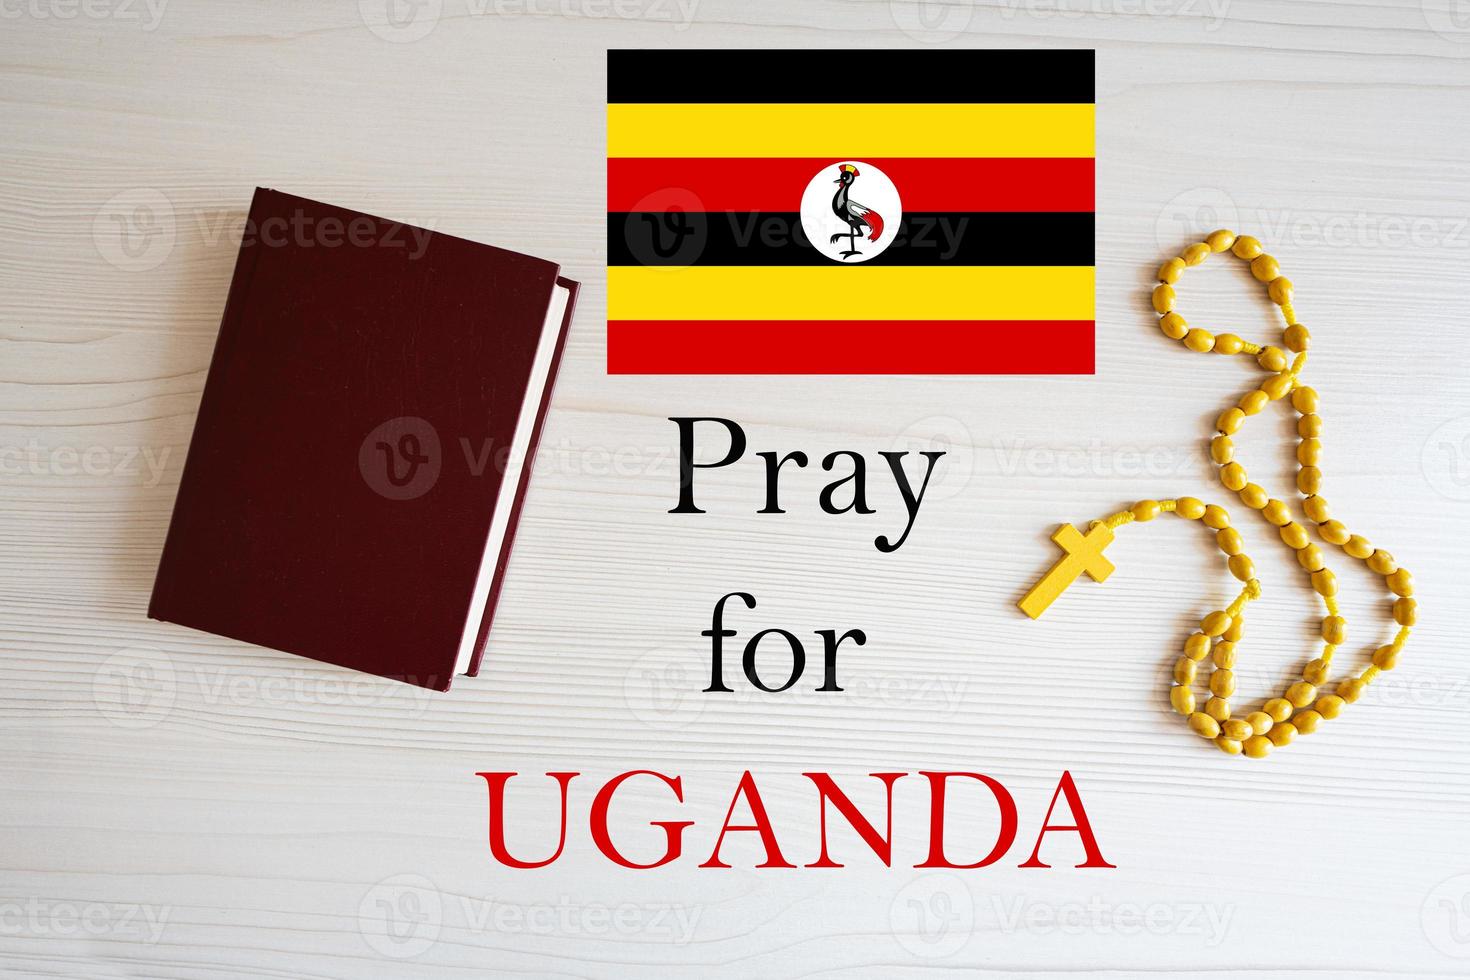 be för uganda. radband och helig bibel bakgrund. foto